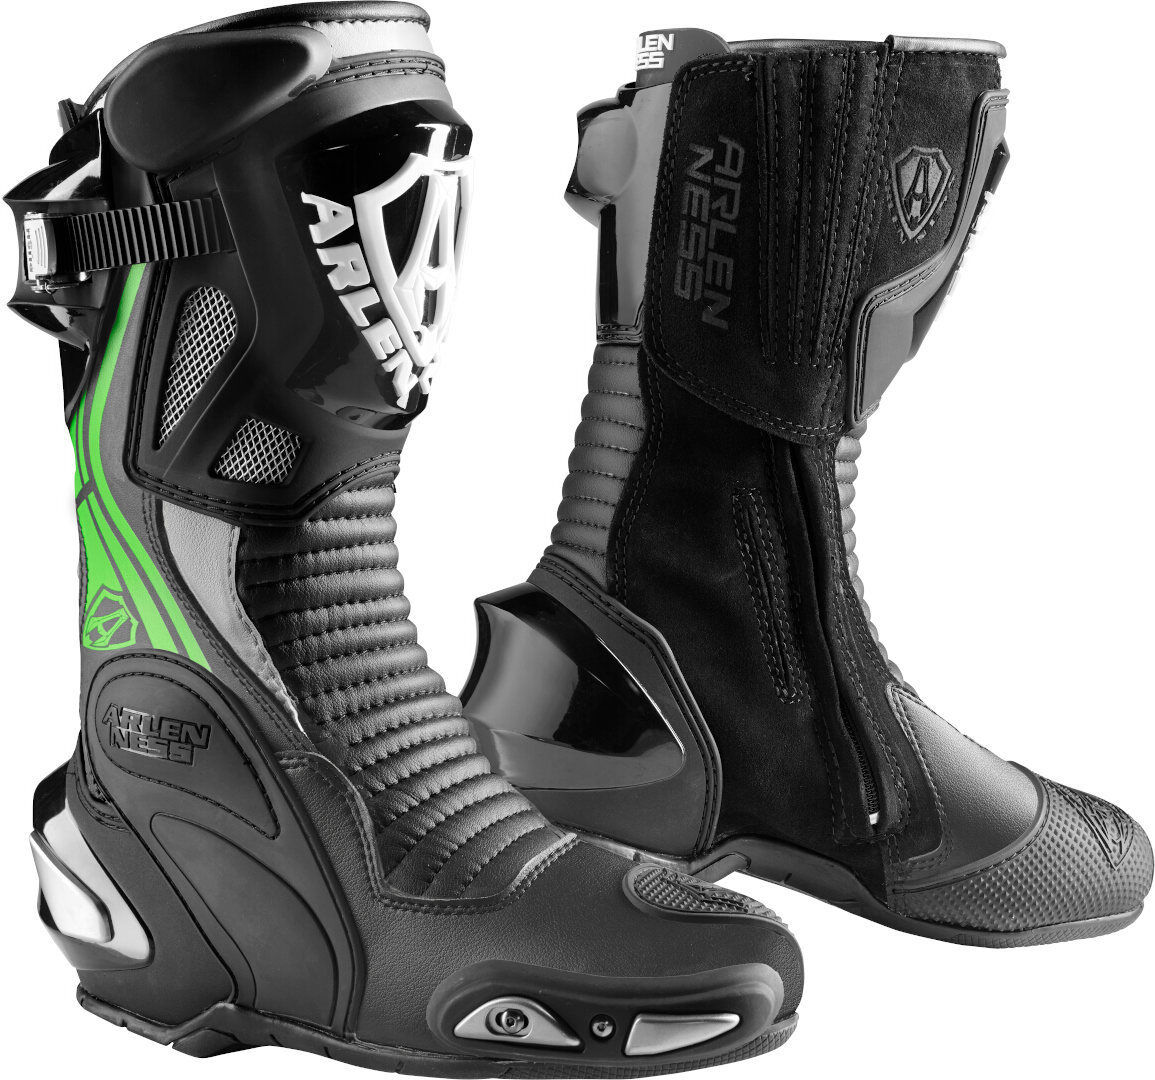 Arlen Ness Pro Shift 2 Motocyklové boty 37 Černá Bílá Zelená